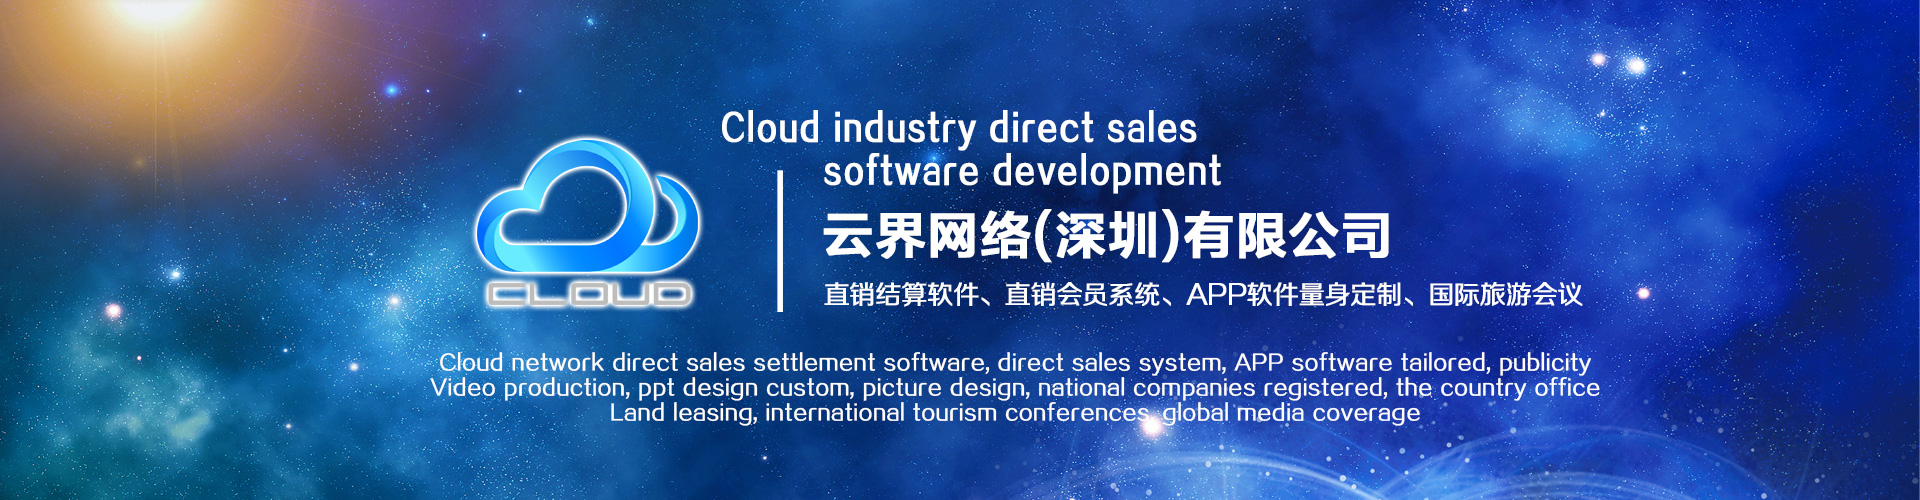 云界直销软件开发